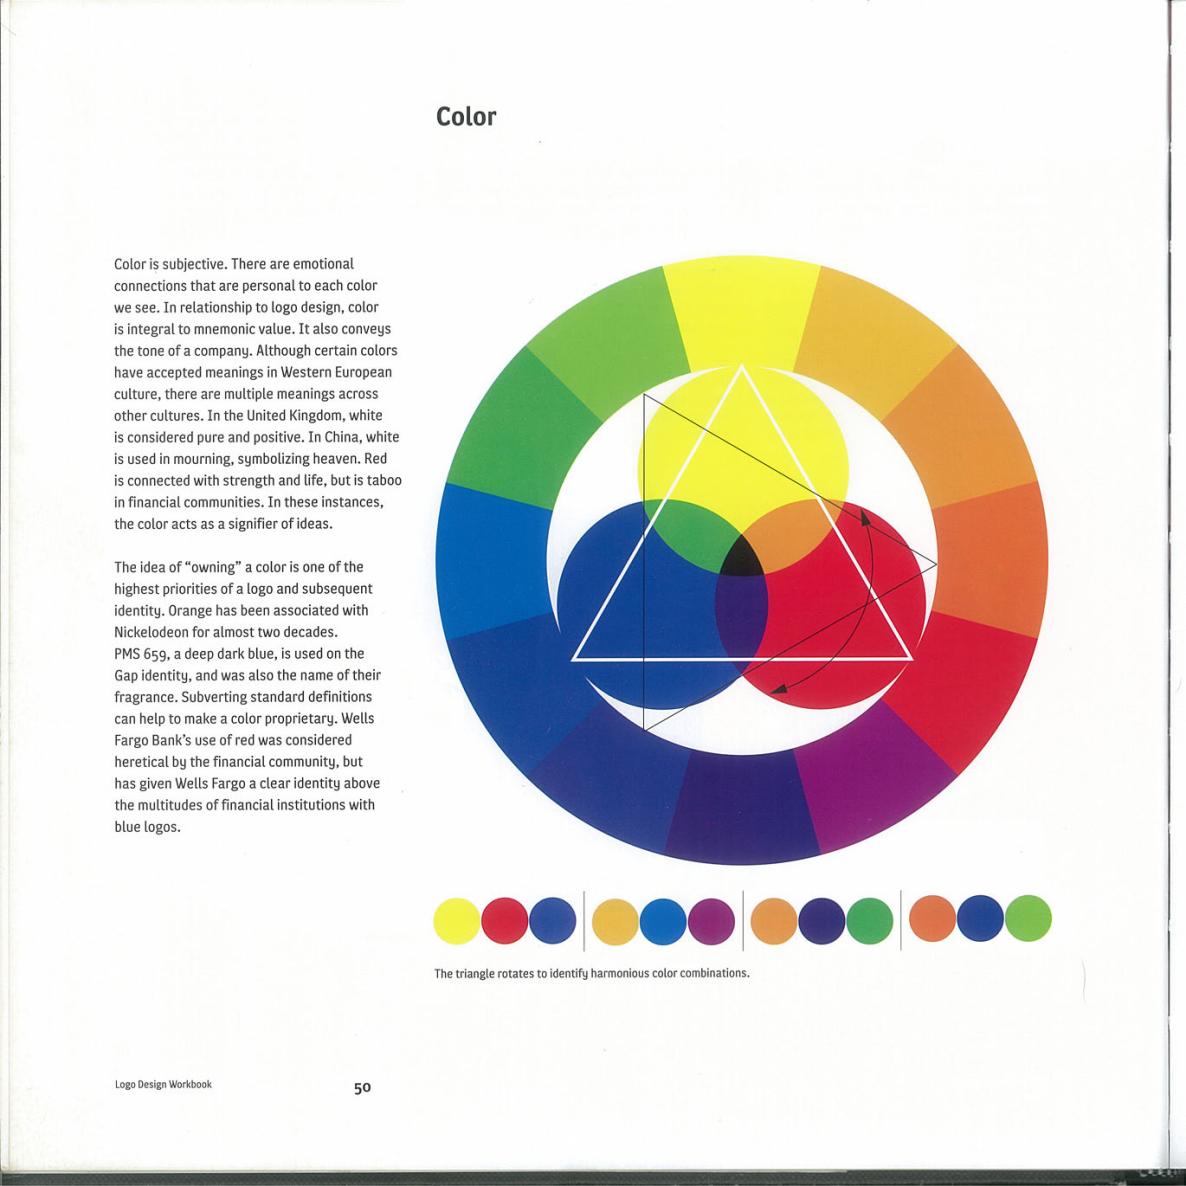 Logo Design Workbook - photo 50